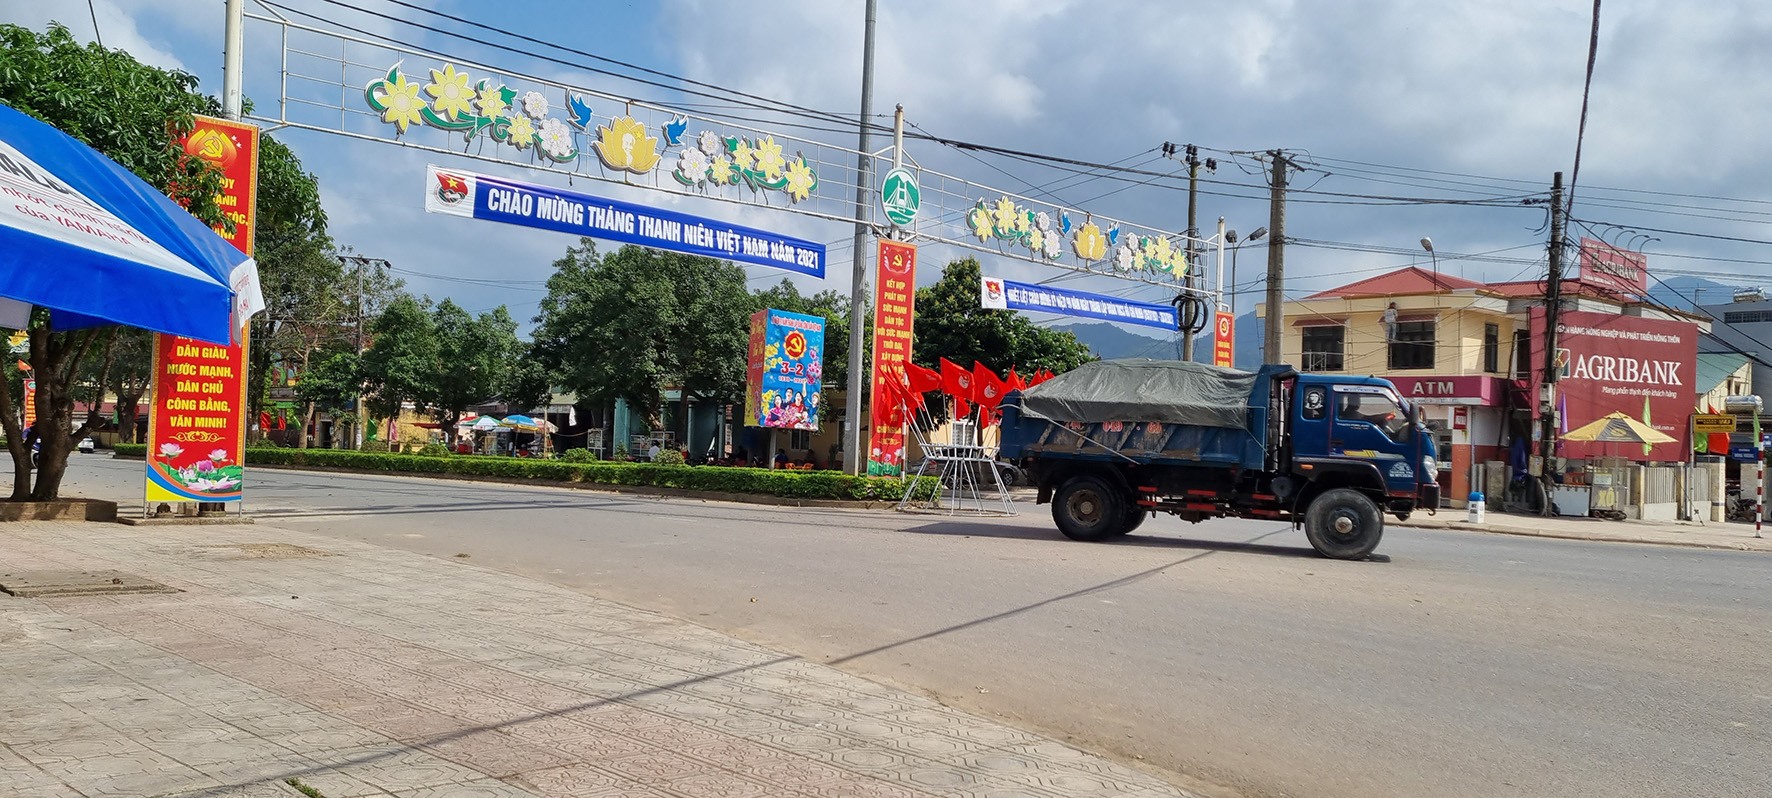 Quốc lộ 9, đoạn đi qua thị trấn Krông Klang, huyện Đakrông rất cần lắp đặt đèn tín hiệu điều khiển giao thông - Ảnh: K.S